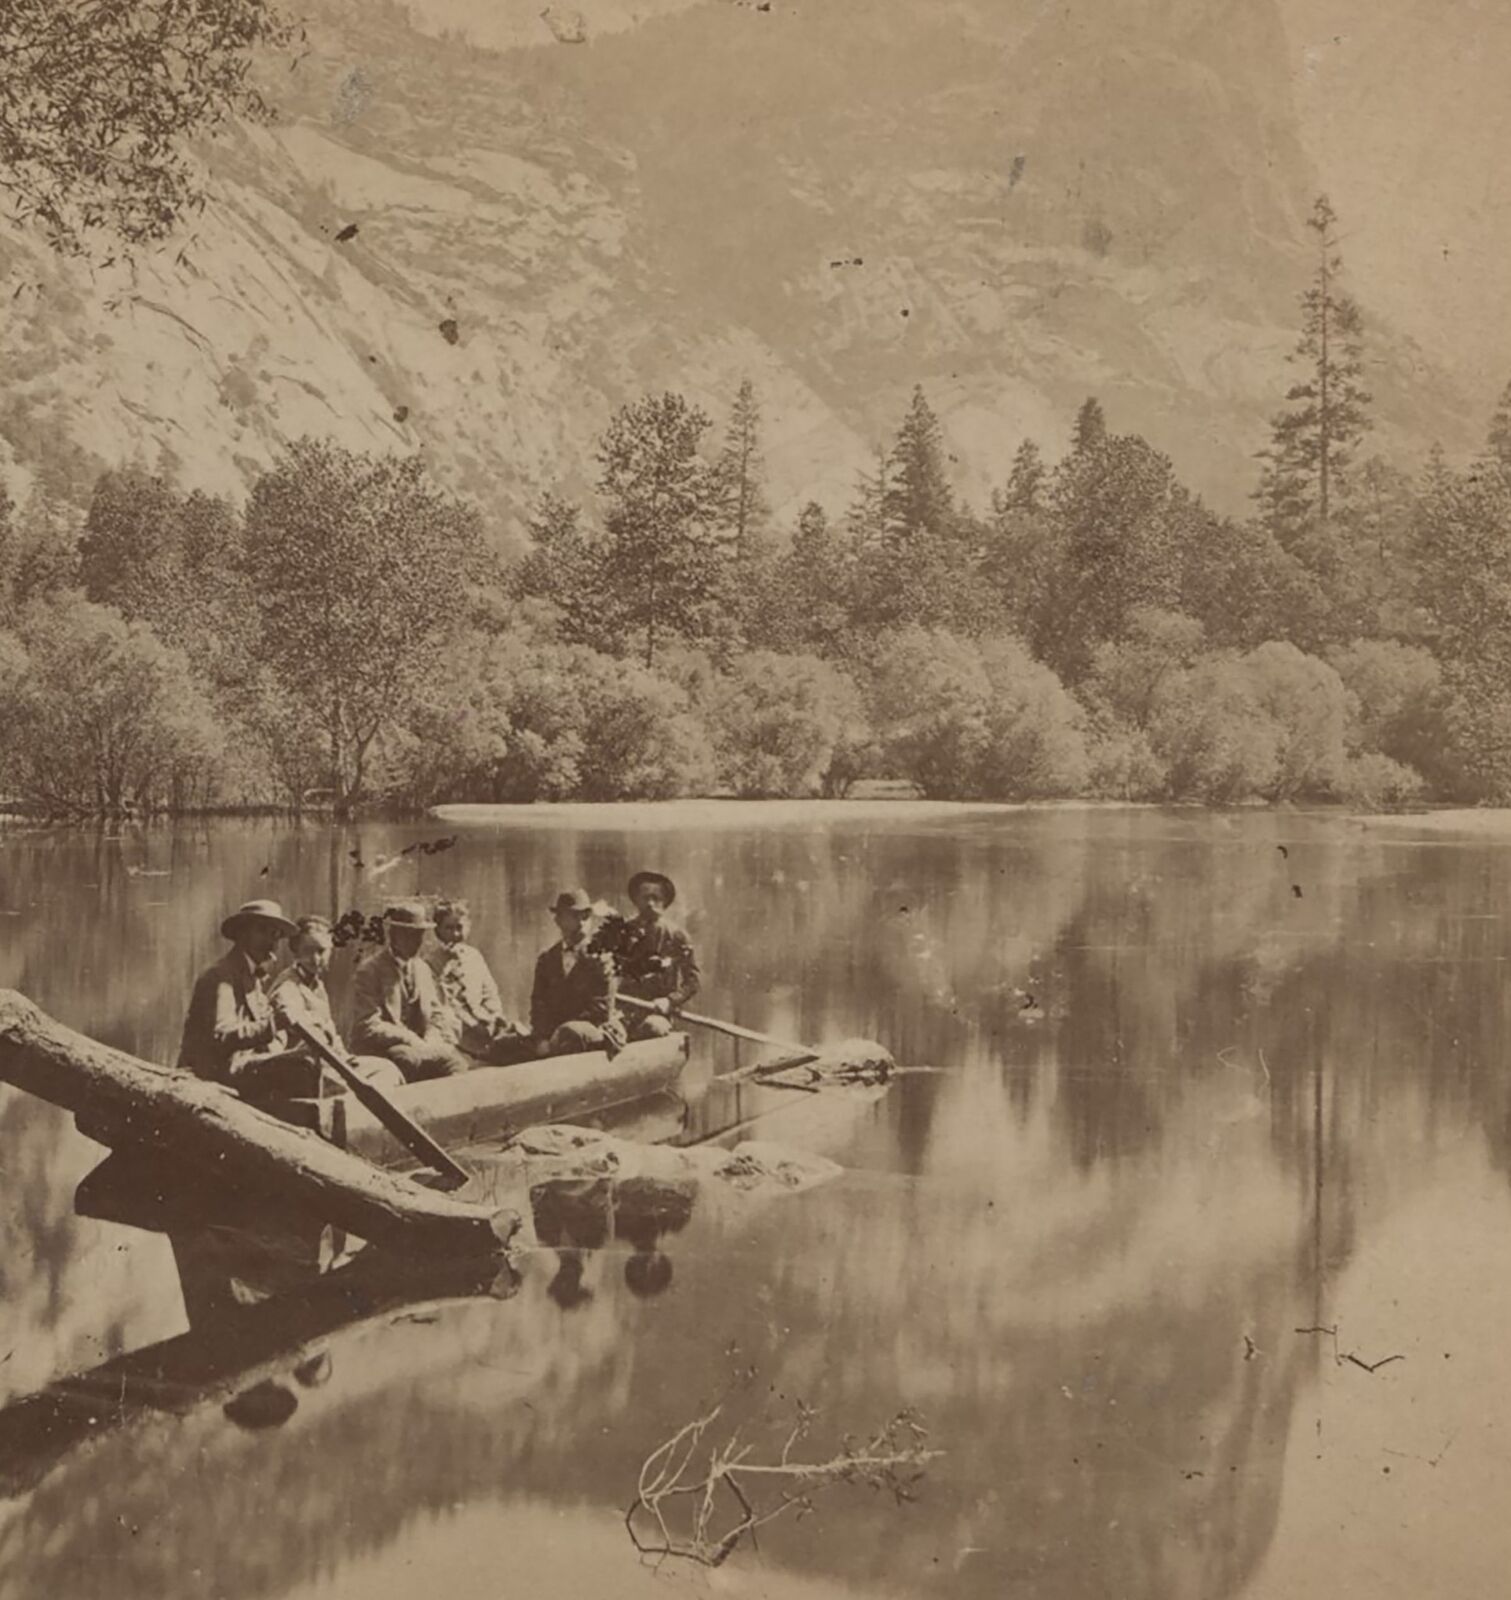 Folks in a Boat Mirror Lake Yosemite Valley CA Kilburn c1880